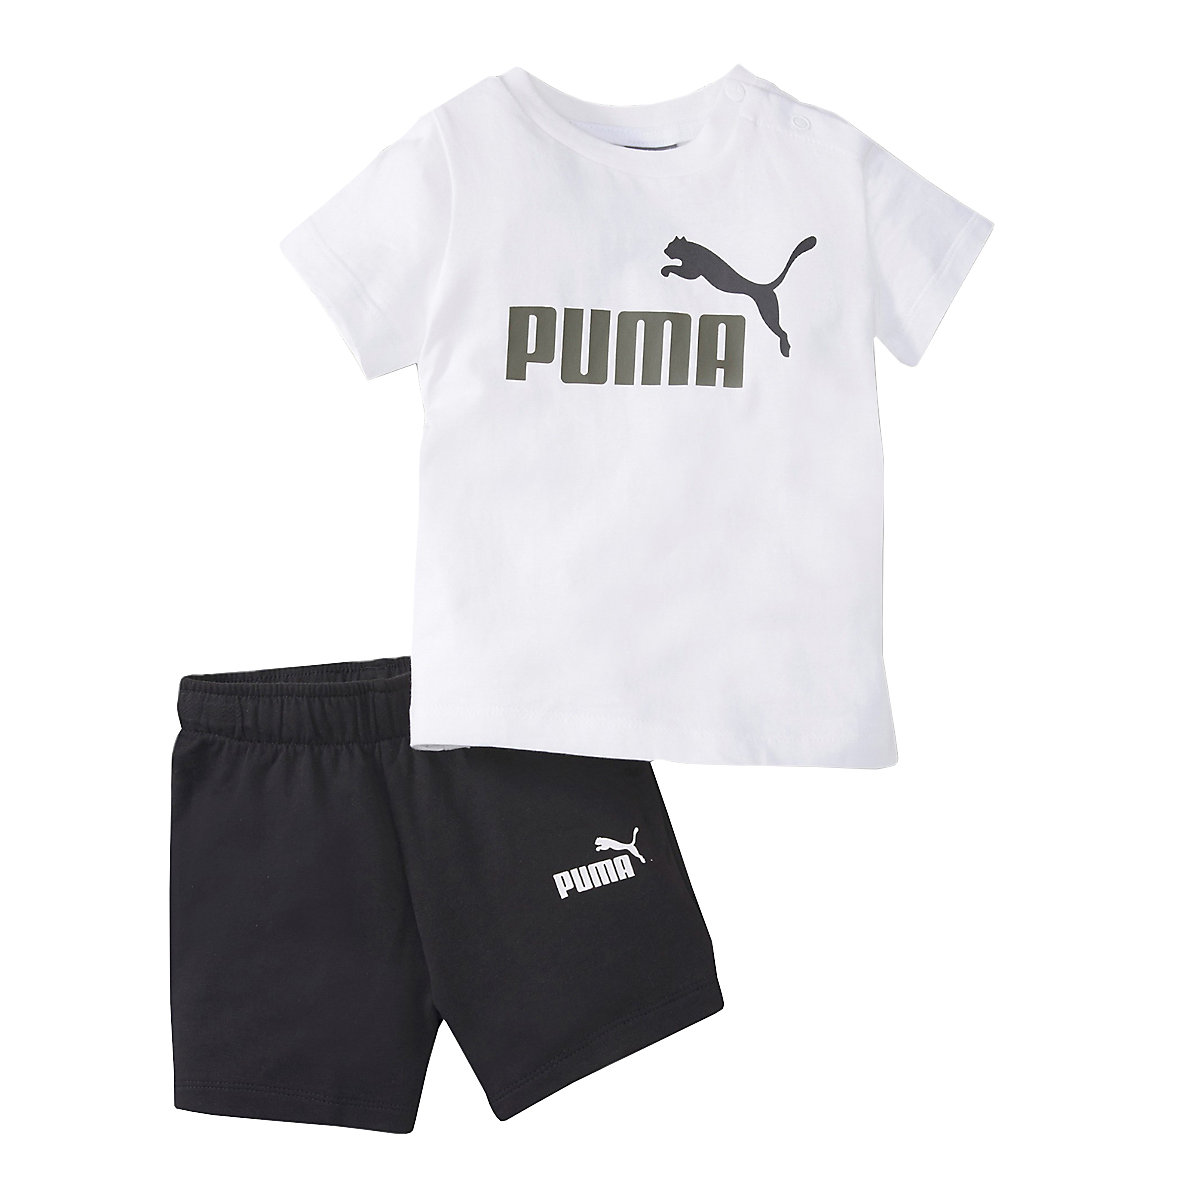 PUMA Minicats Tee Short Set 845839-02 T-Shirts für Jungen weiß